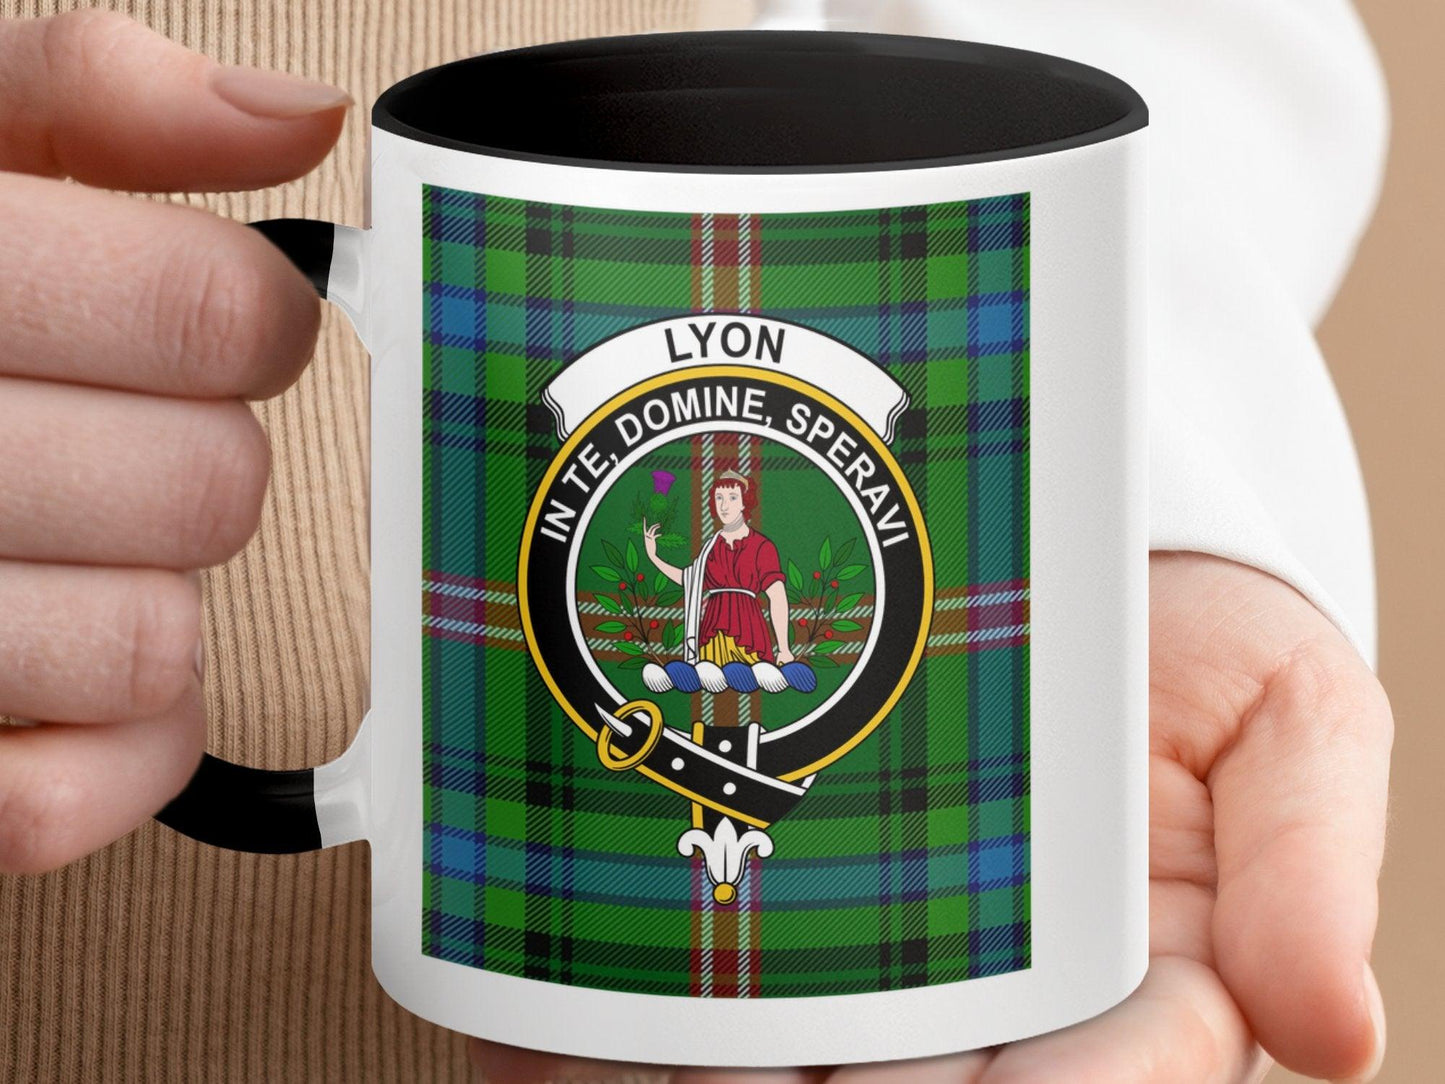 Scottish Clan Lyon Tartan Plaid Crest Design Mug - Living Stone Gifts